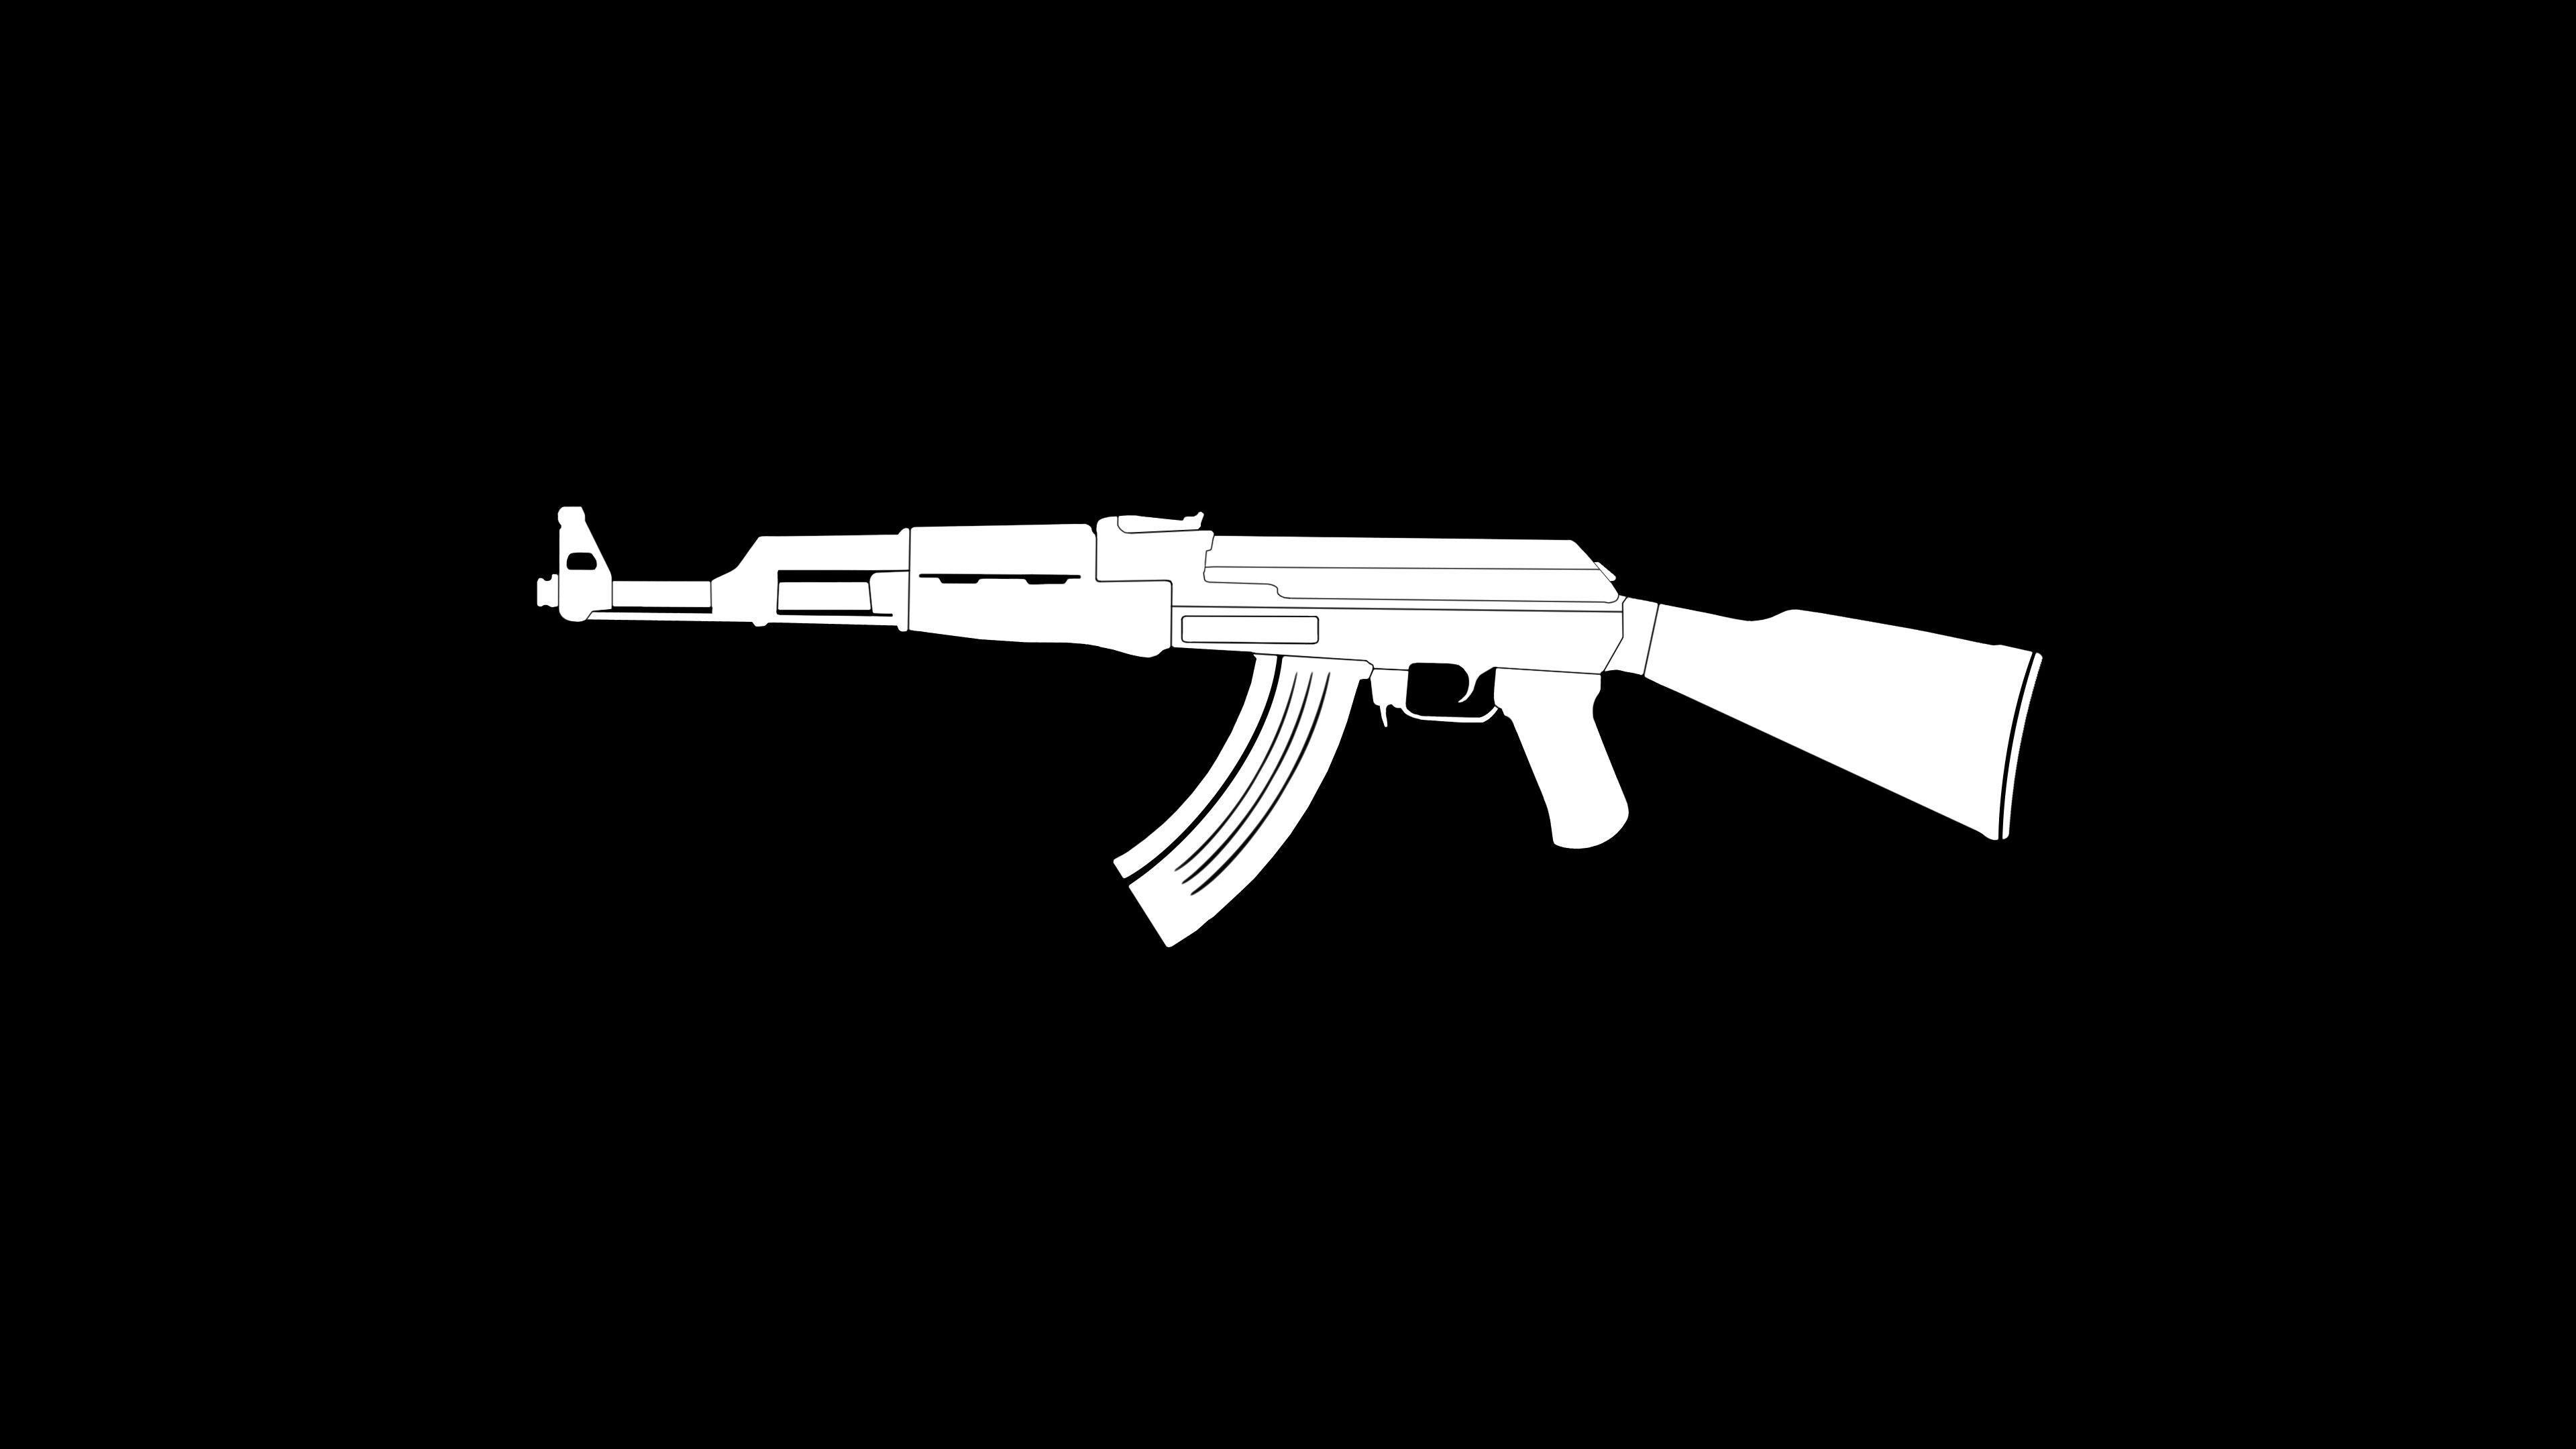 AK47 Gun Weapon Minimalism, HD Artist, 4k Wallpaper, Image